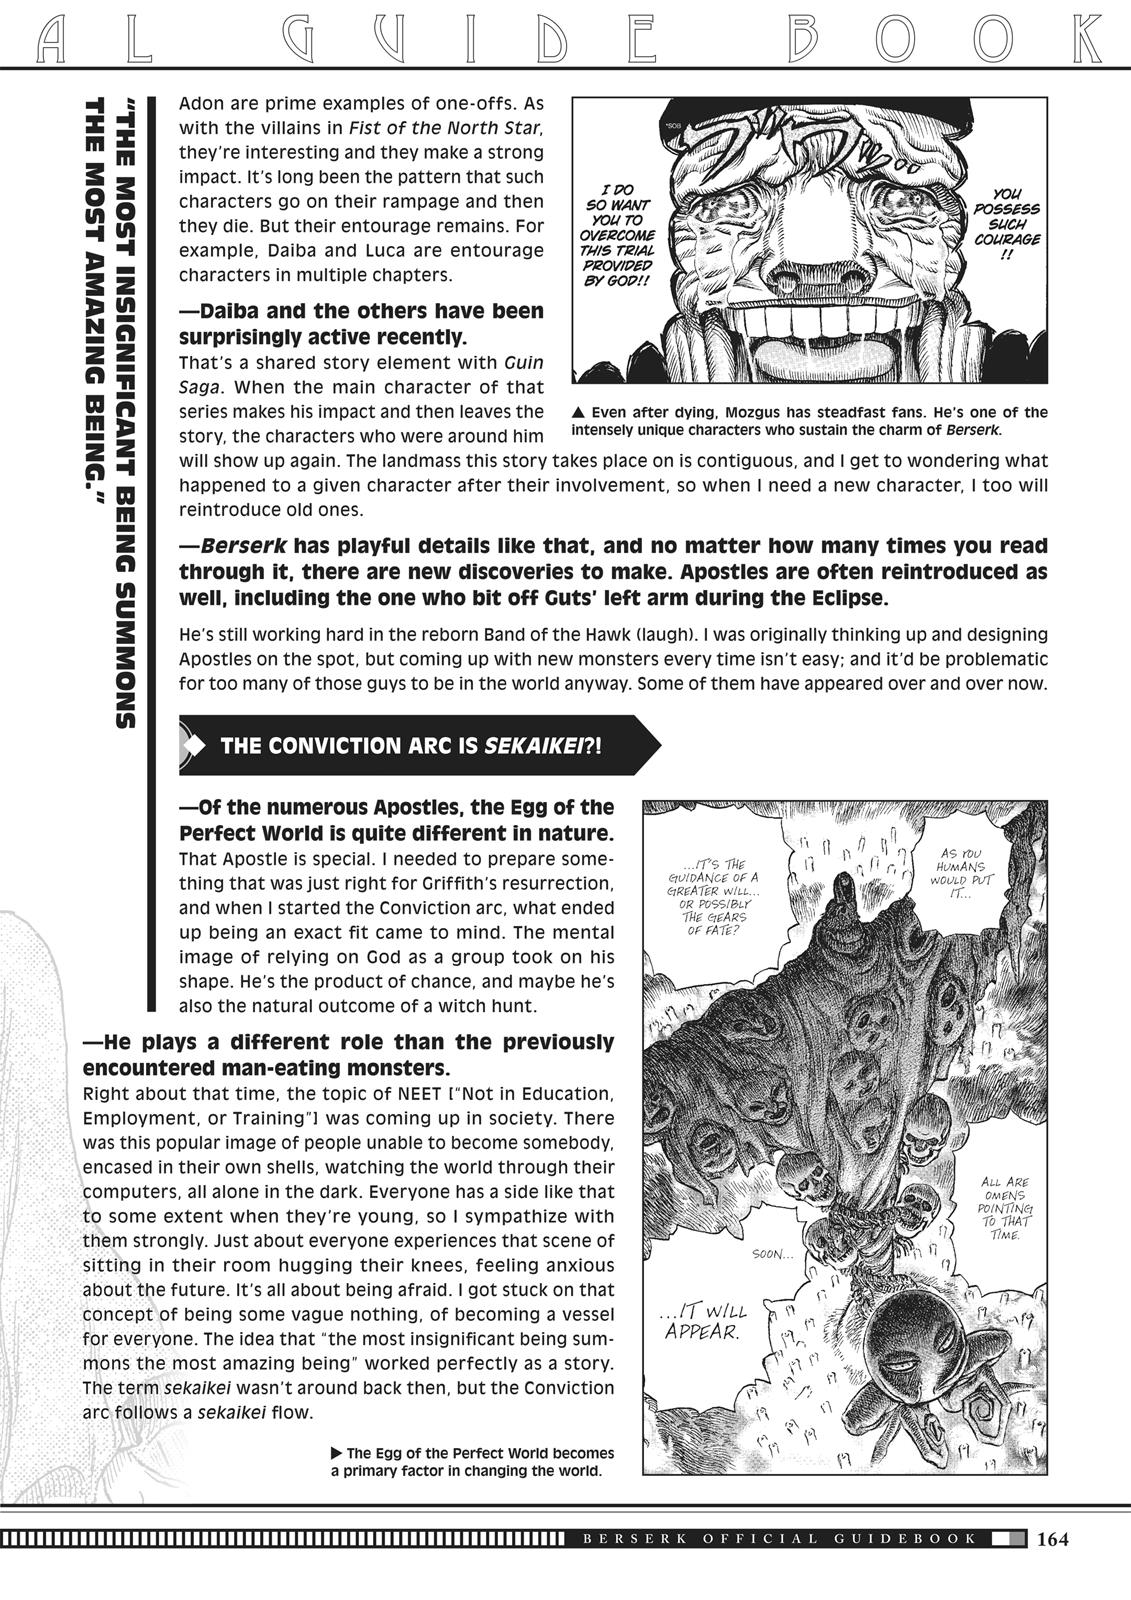 Berserk Manga Chapter 350.5 image 161